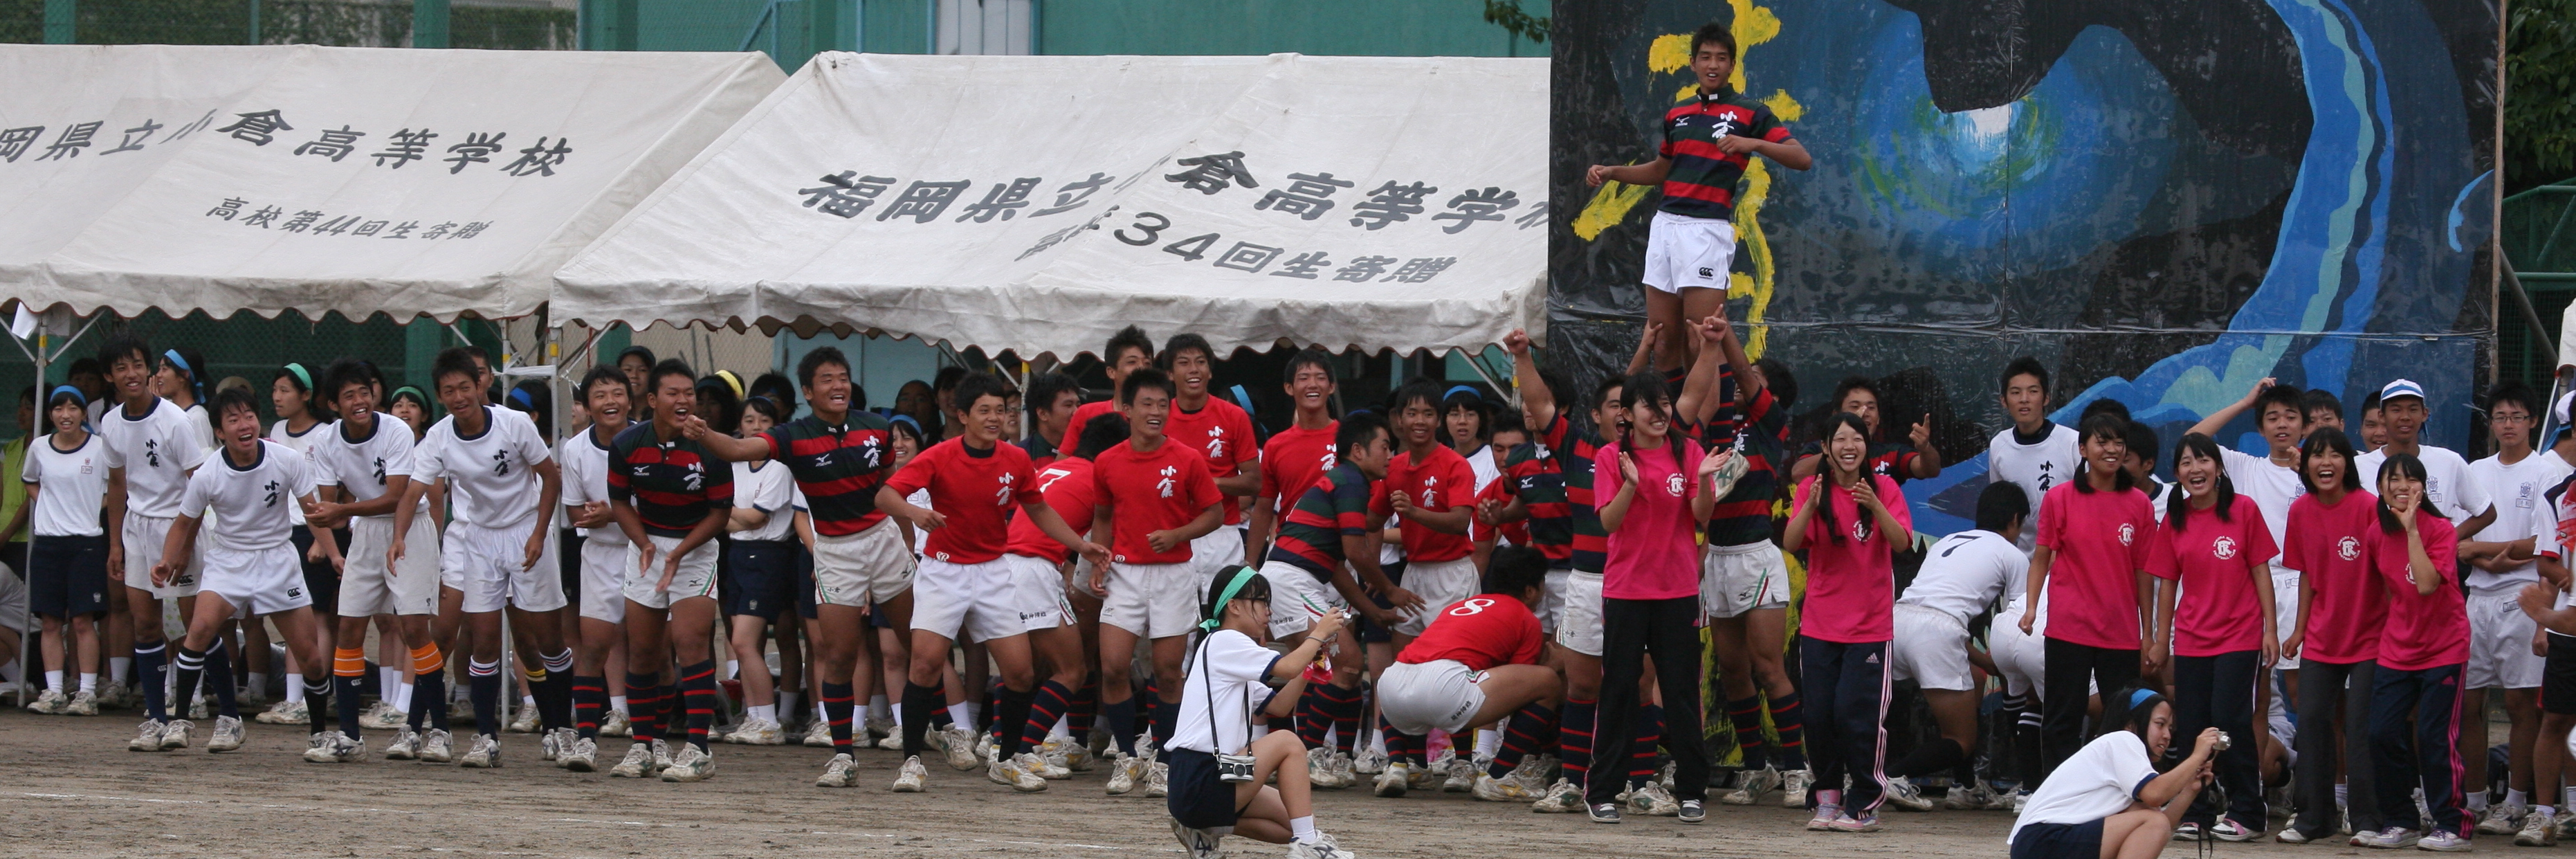 http://kokura-rugby.sakura.ne.jp/2011.9.4-15A.JPG